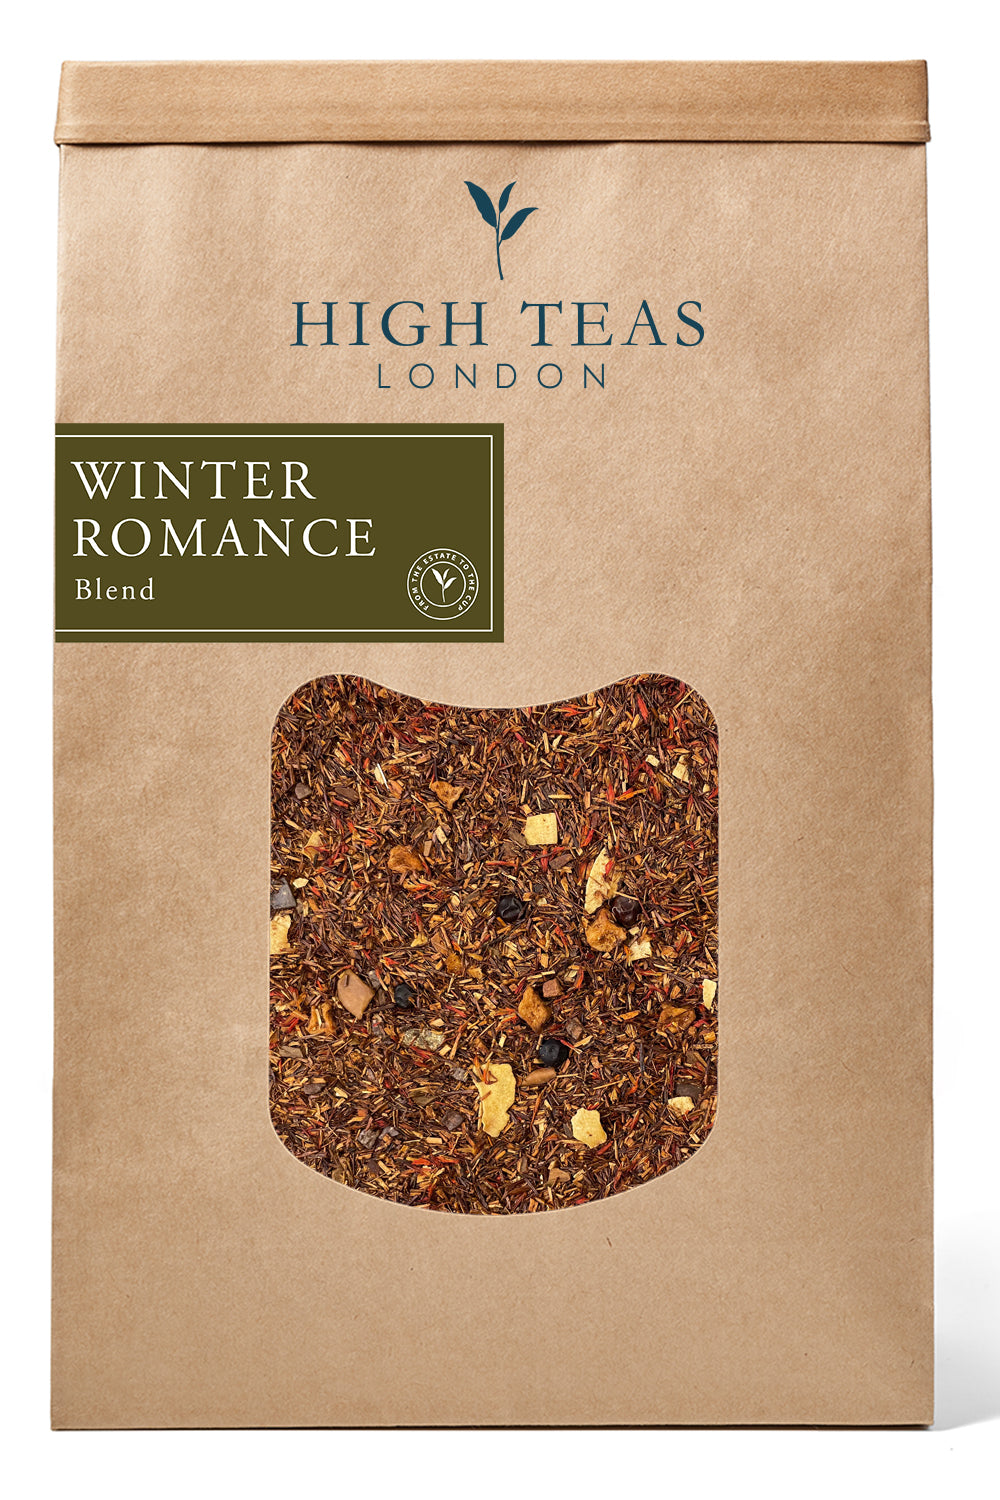 Winter Romance-500g-Loose Leaf Tea-High Teas